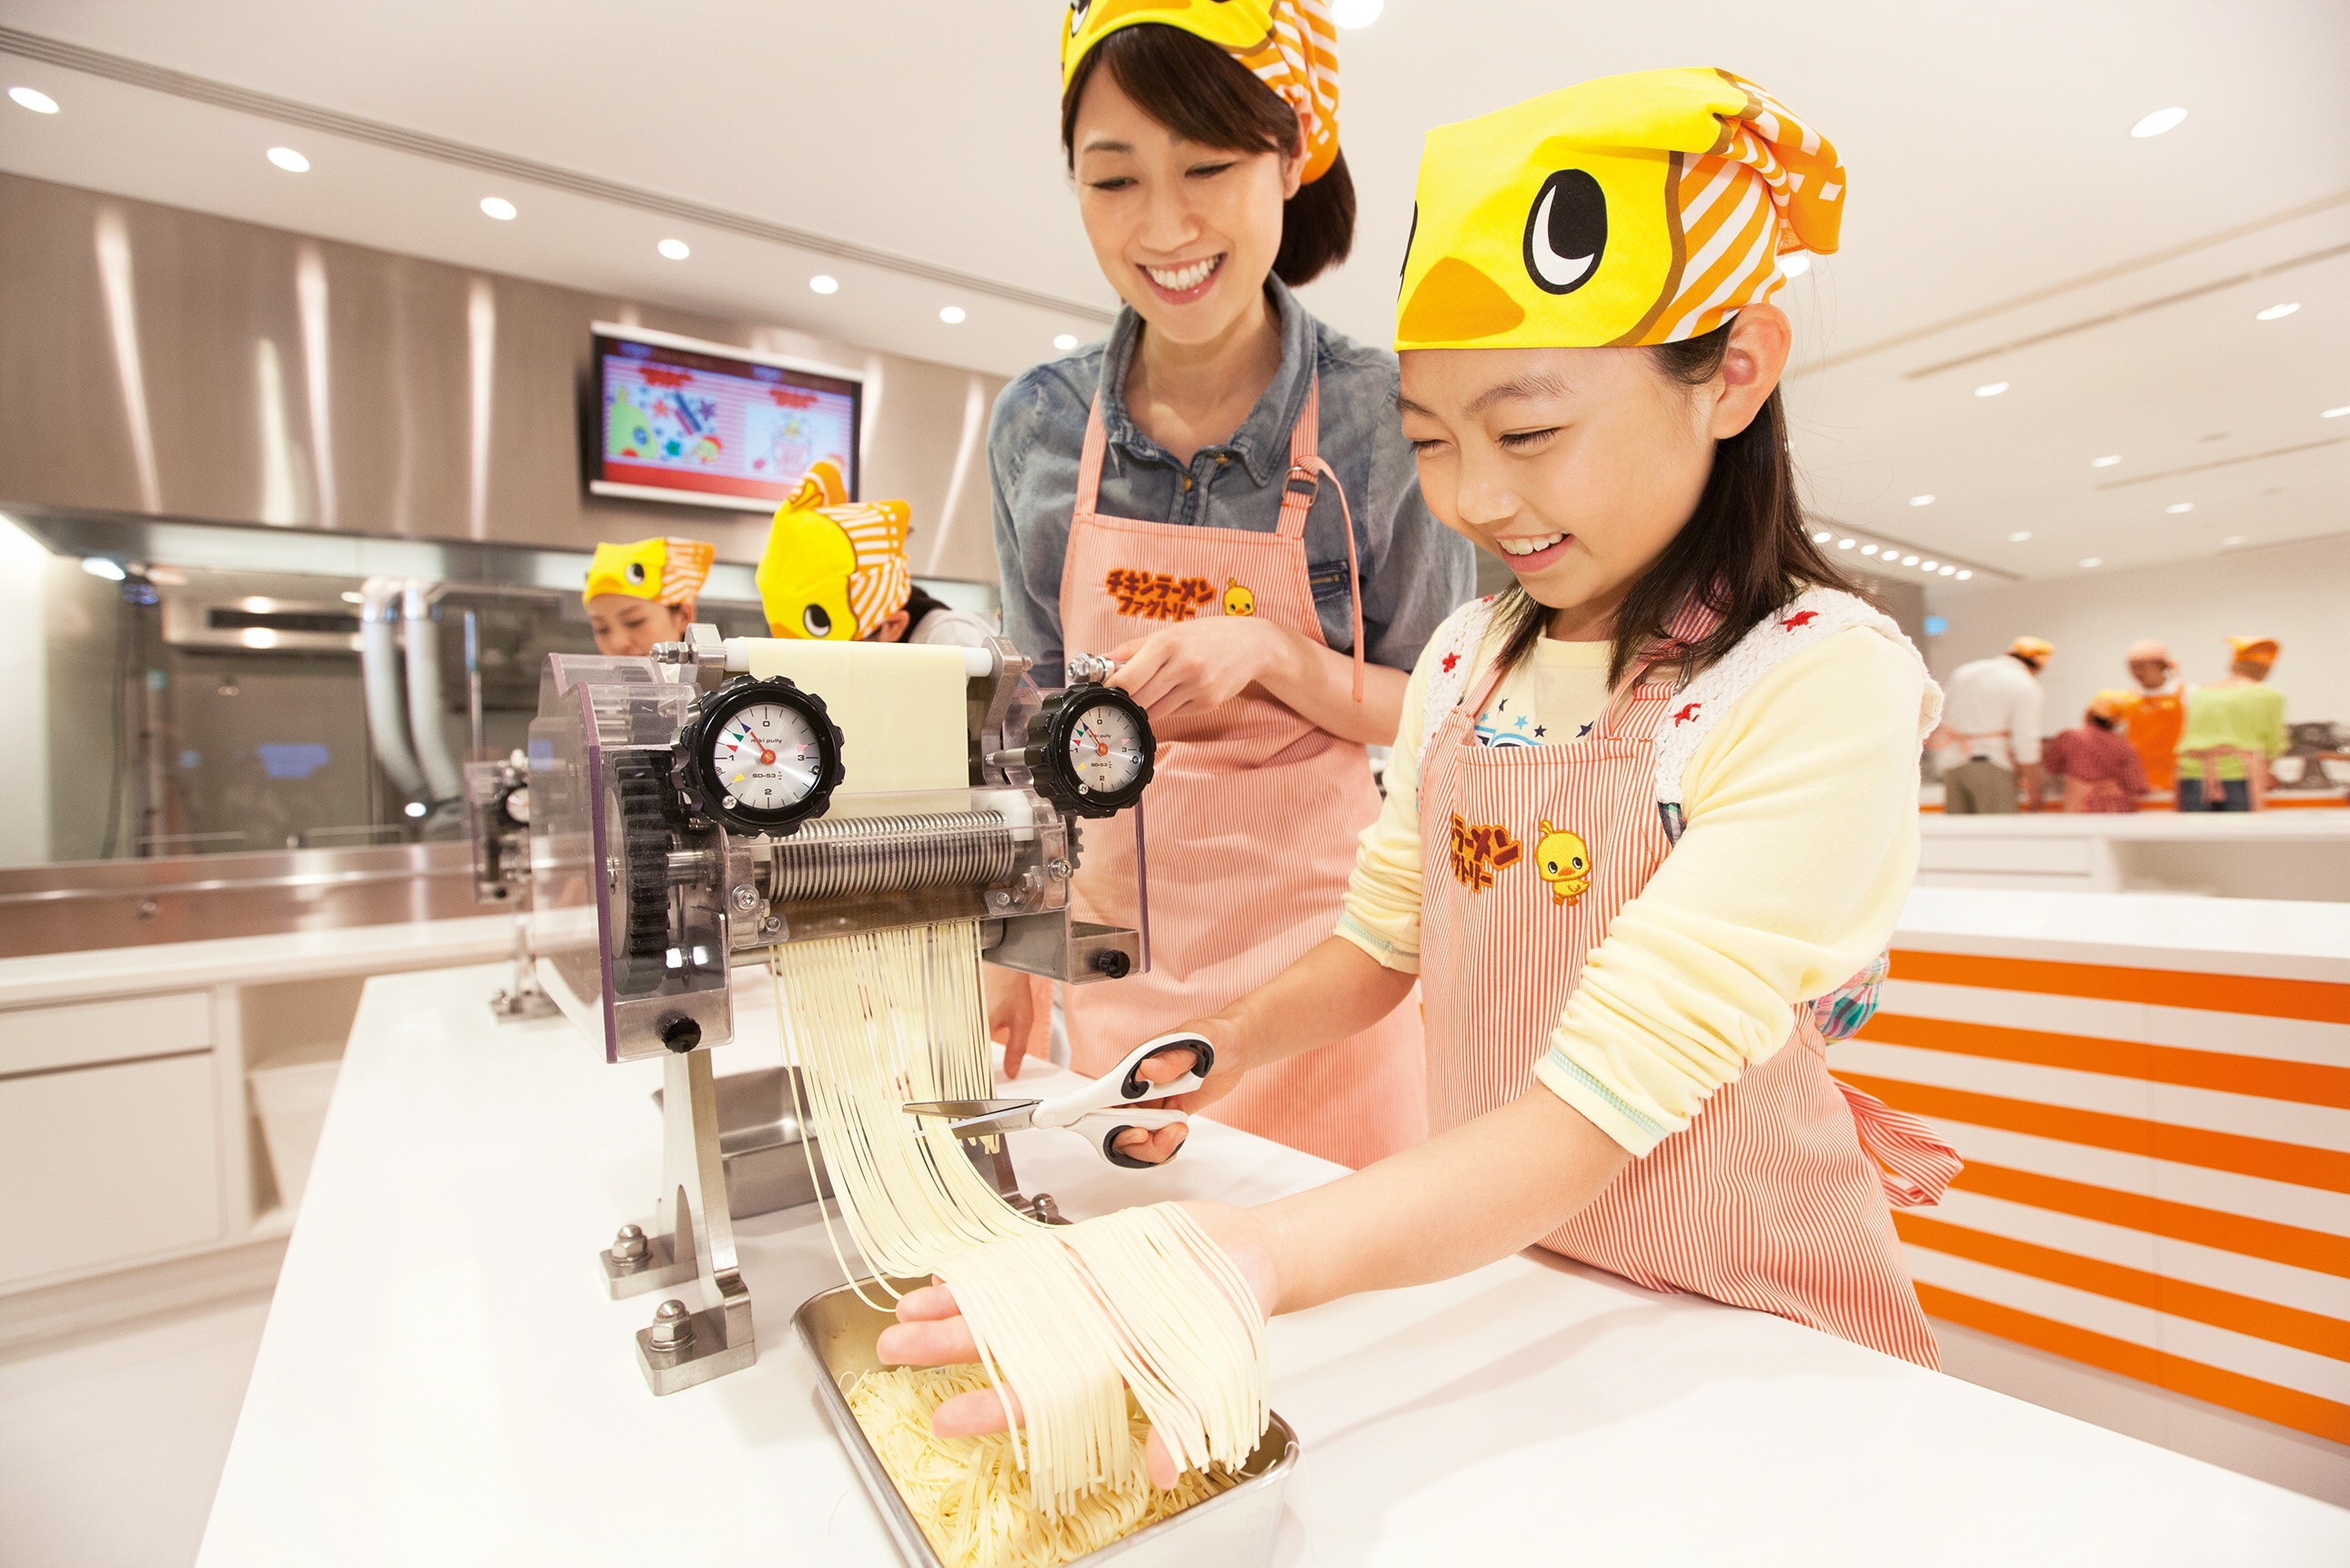 Trải nghiệm chế biến mì hộp thú vị tại Bảo tàng mì ăn liền Yokohama